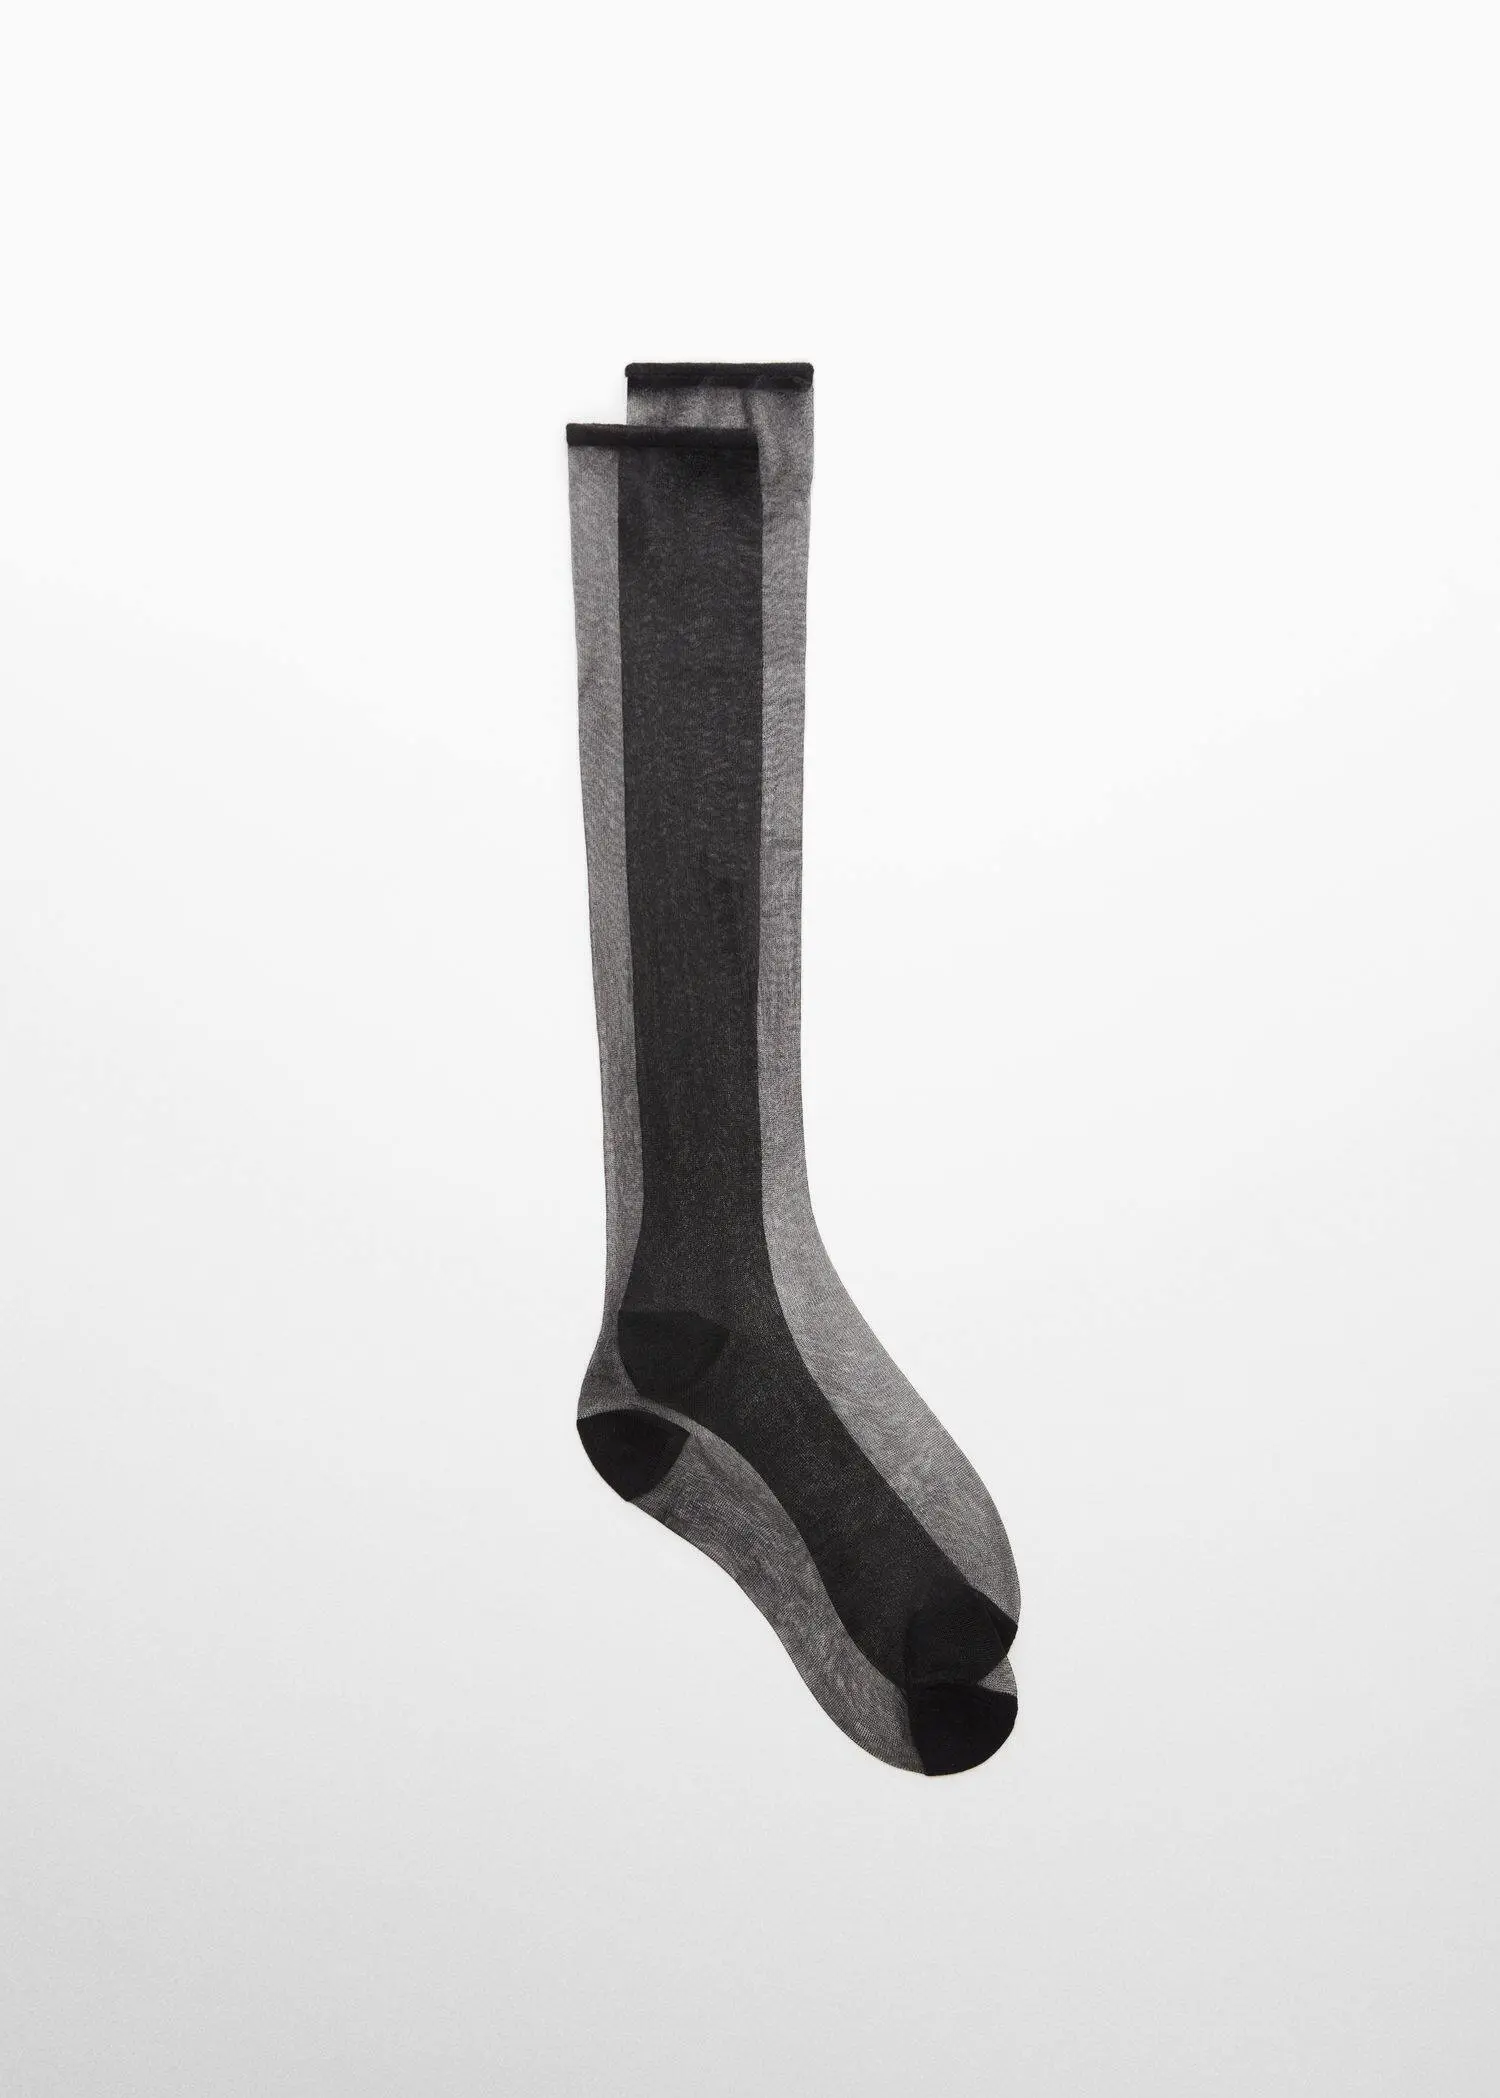 Mango Stocking-type sock. 1